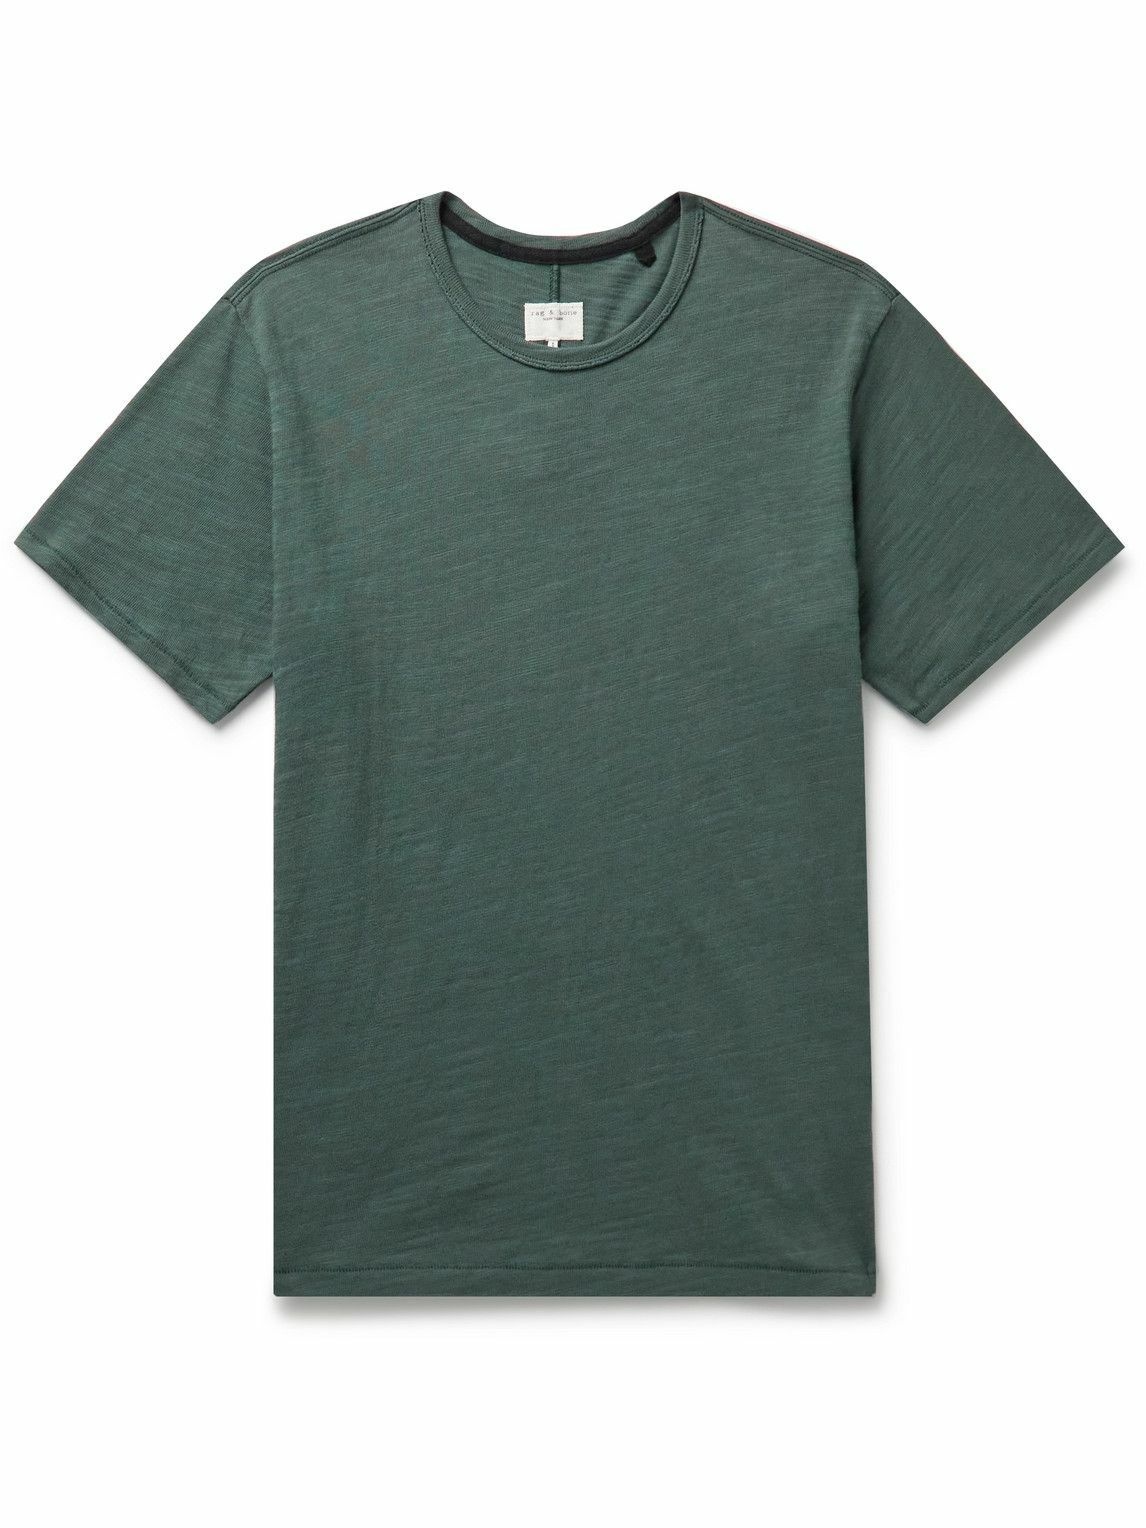 Photo: Rag & Bone - Classic Flame Cotton-Jersey T-Shirt - Green